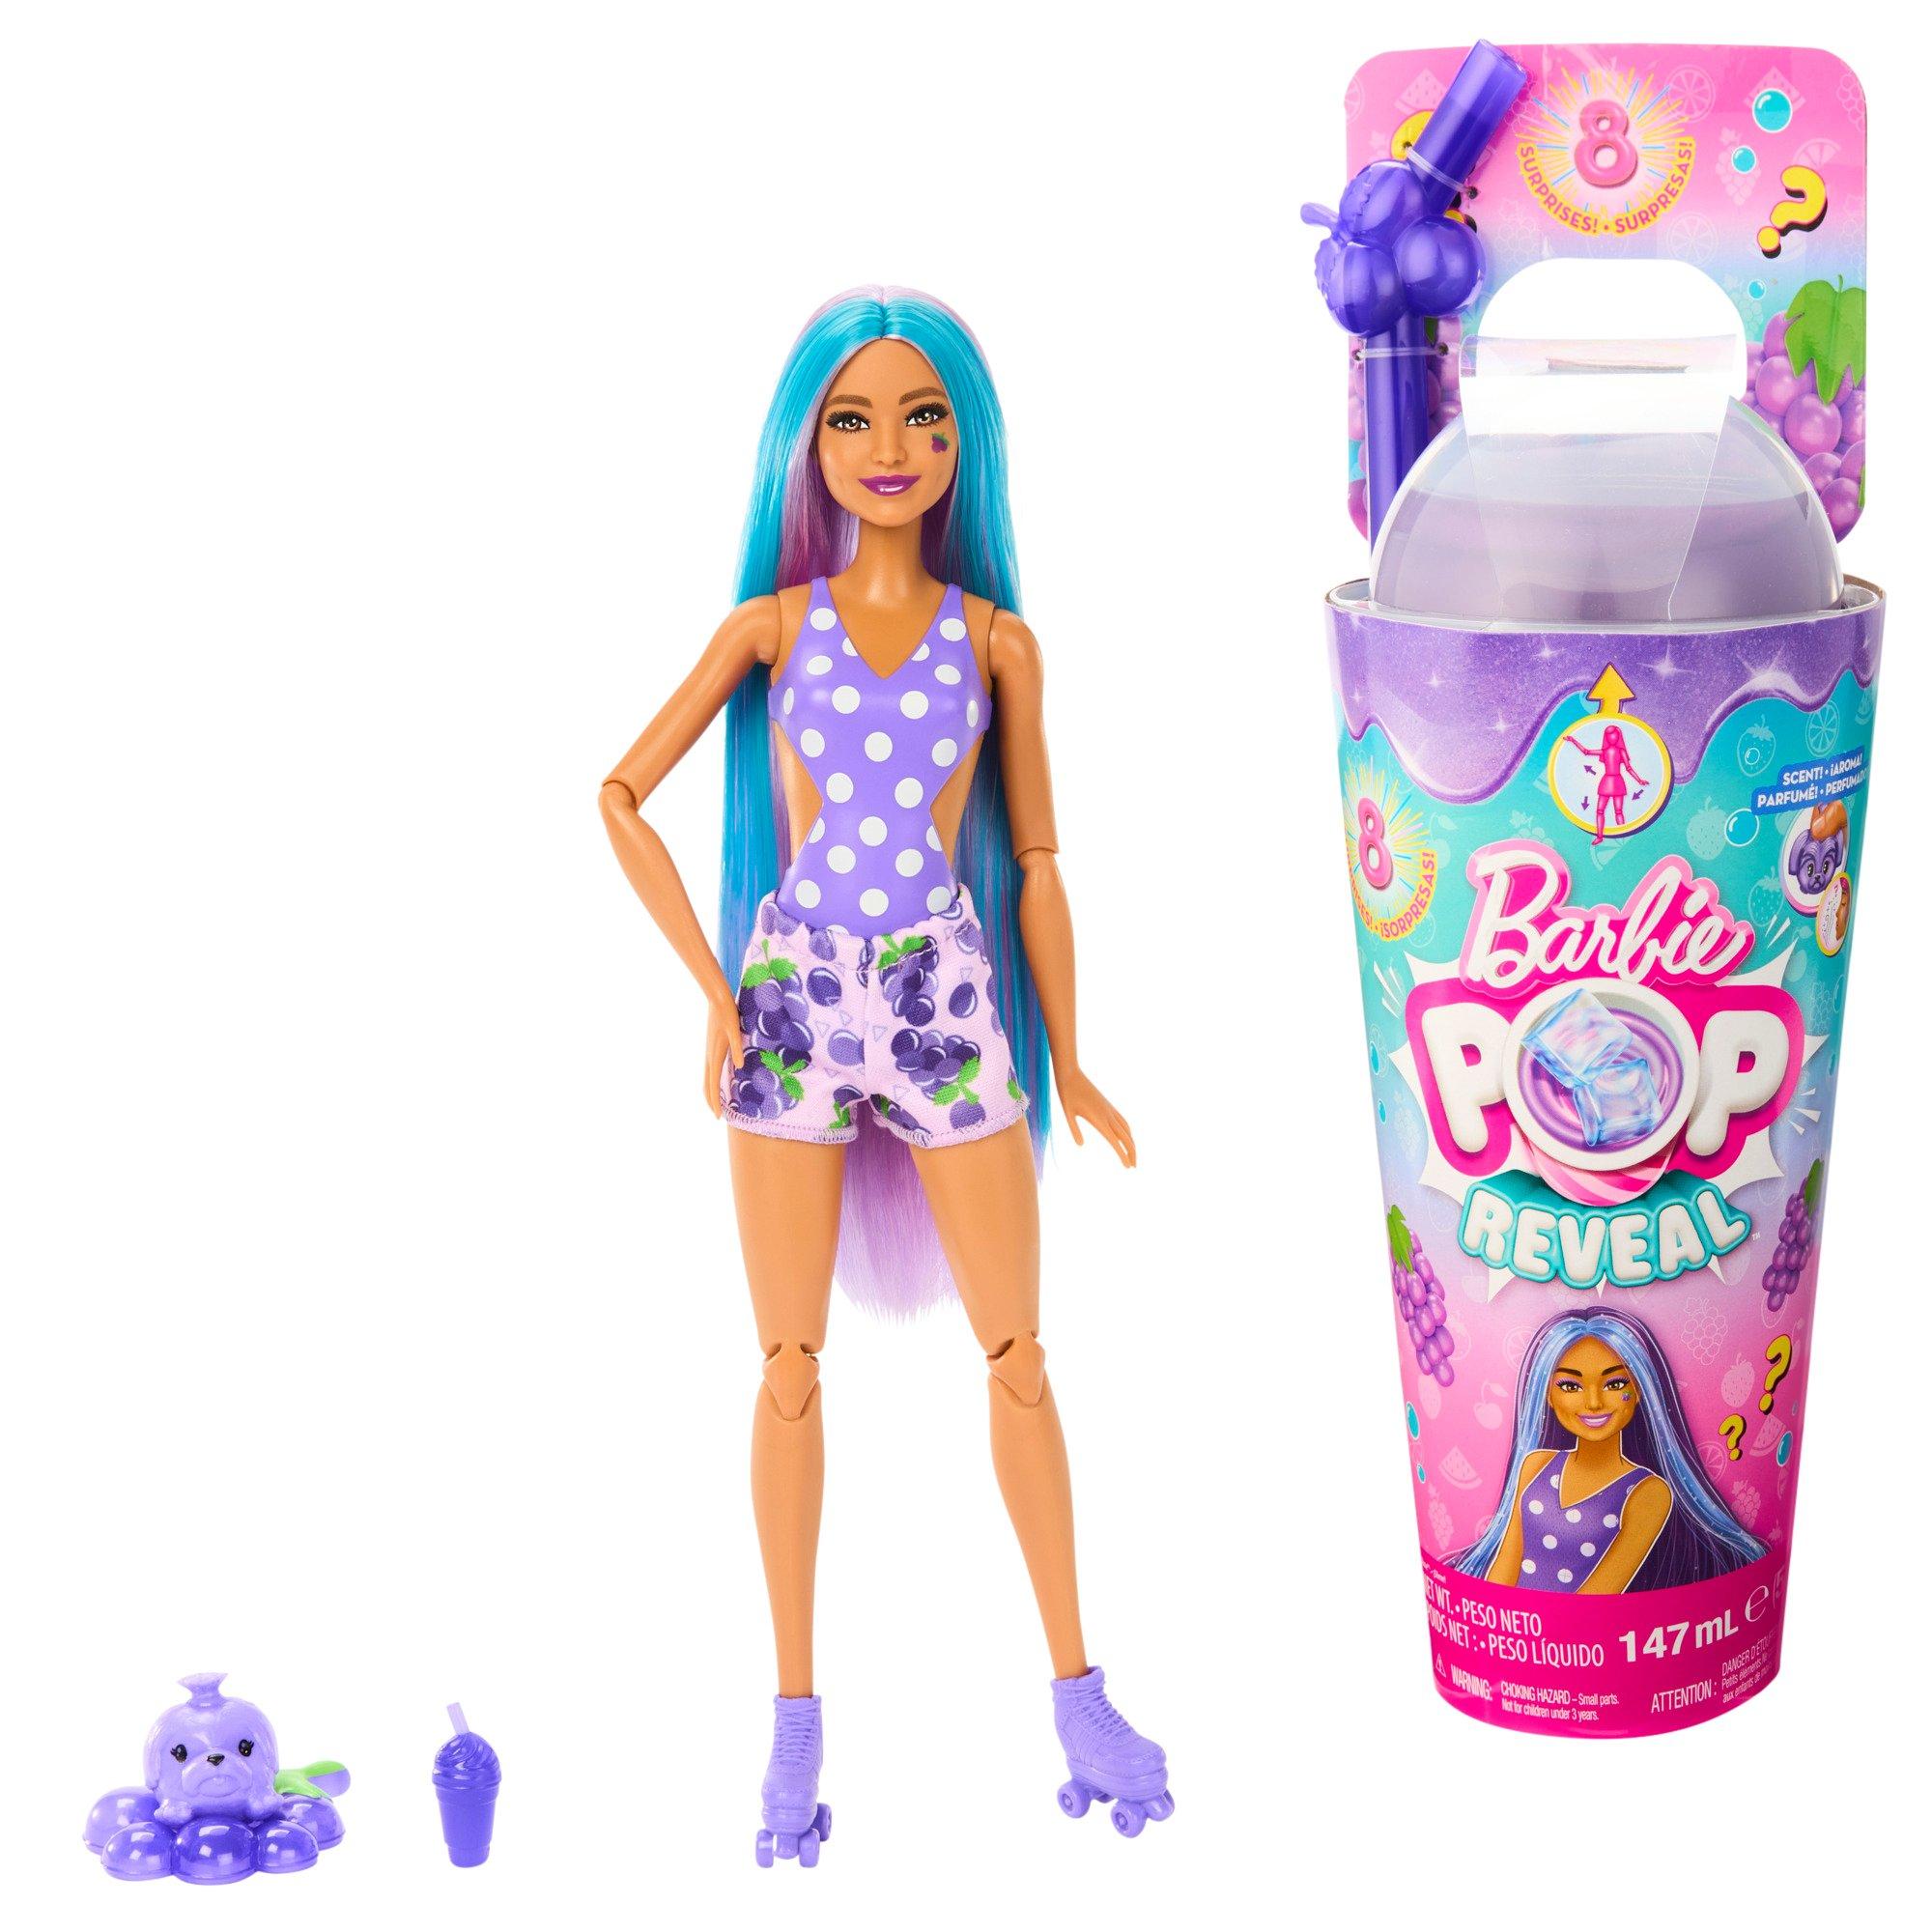 Barbie Surprise Pop Reveal Fruit Series Grape Soda